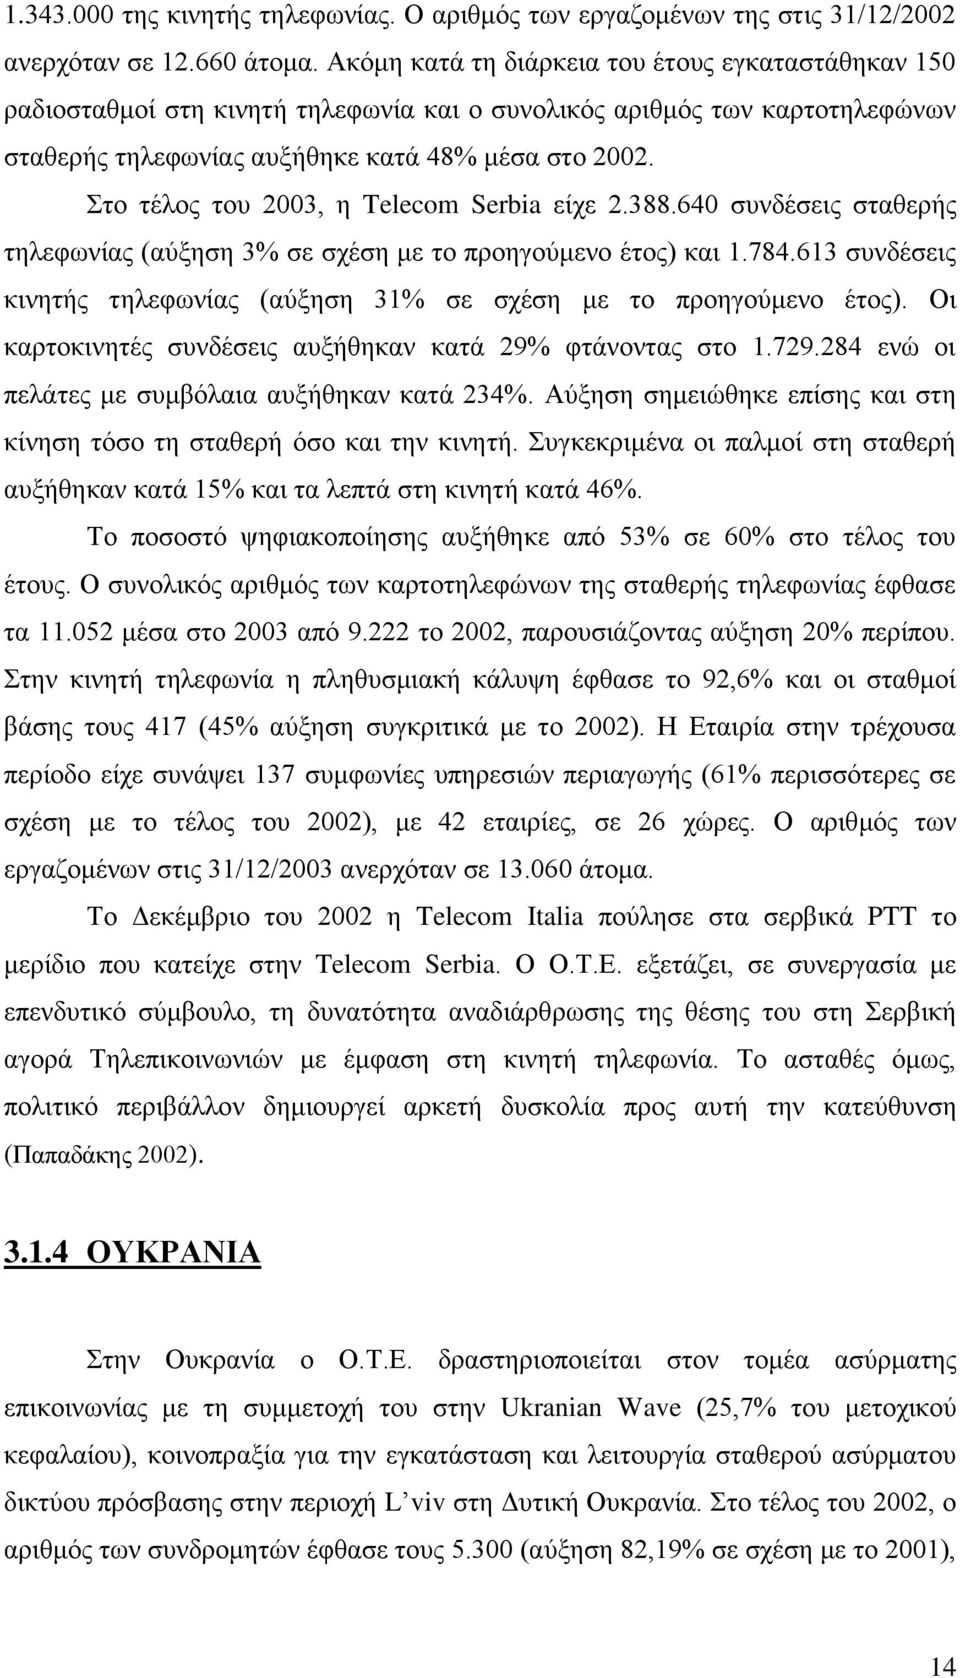 Στο τέλος του 2003, η Telecom Serbia είχε 2.388.640 συνδέσεις σταθερής τηλεφωνίας (αύξηση 3% σε σχέση με το προηγούμενο έτος) και 1.784.